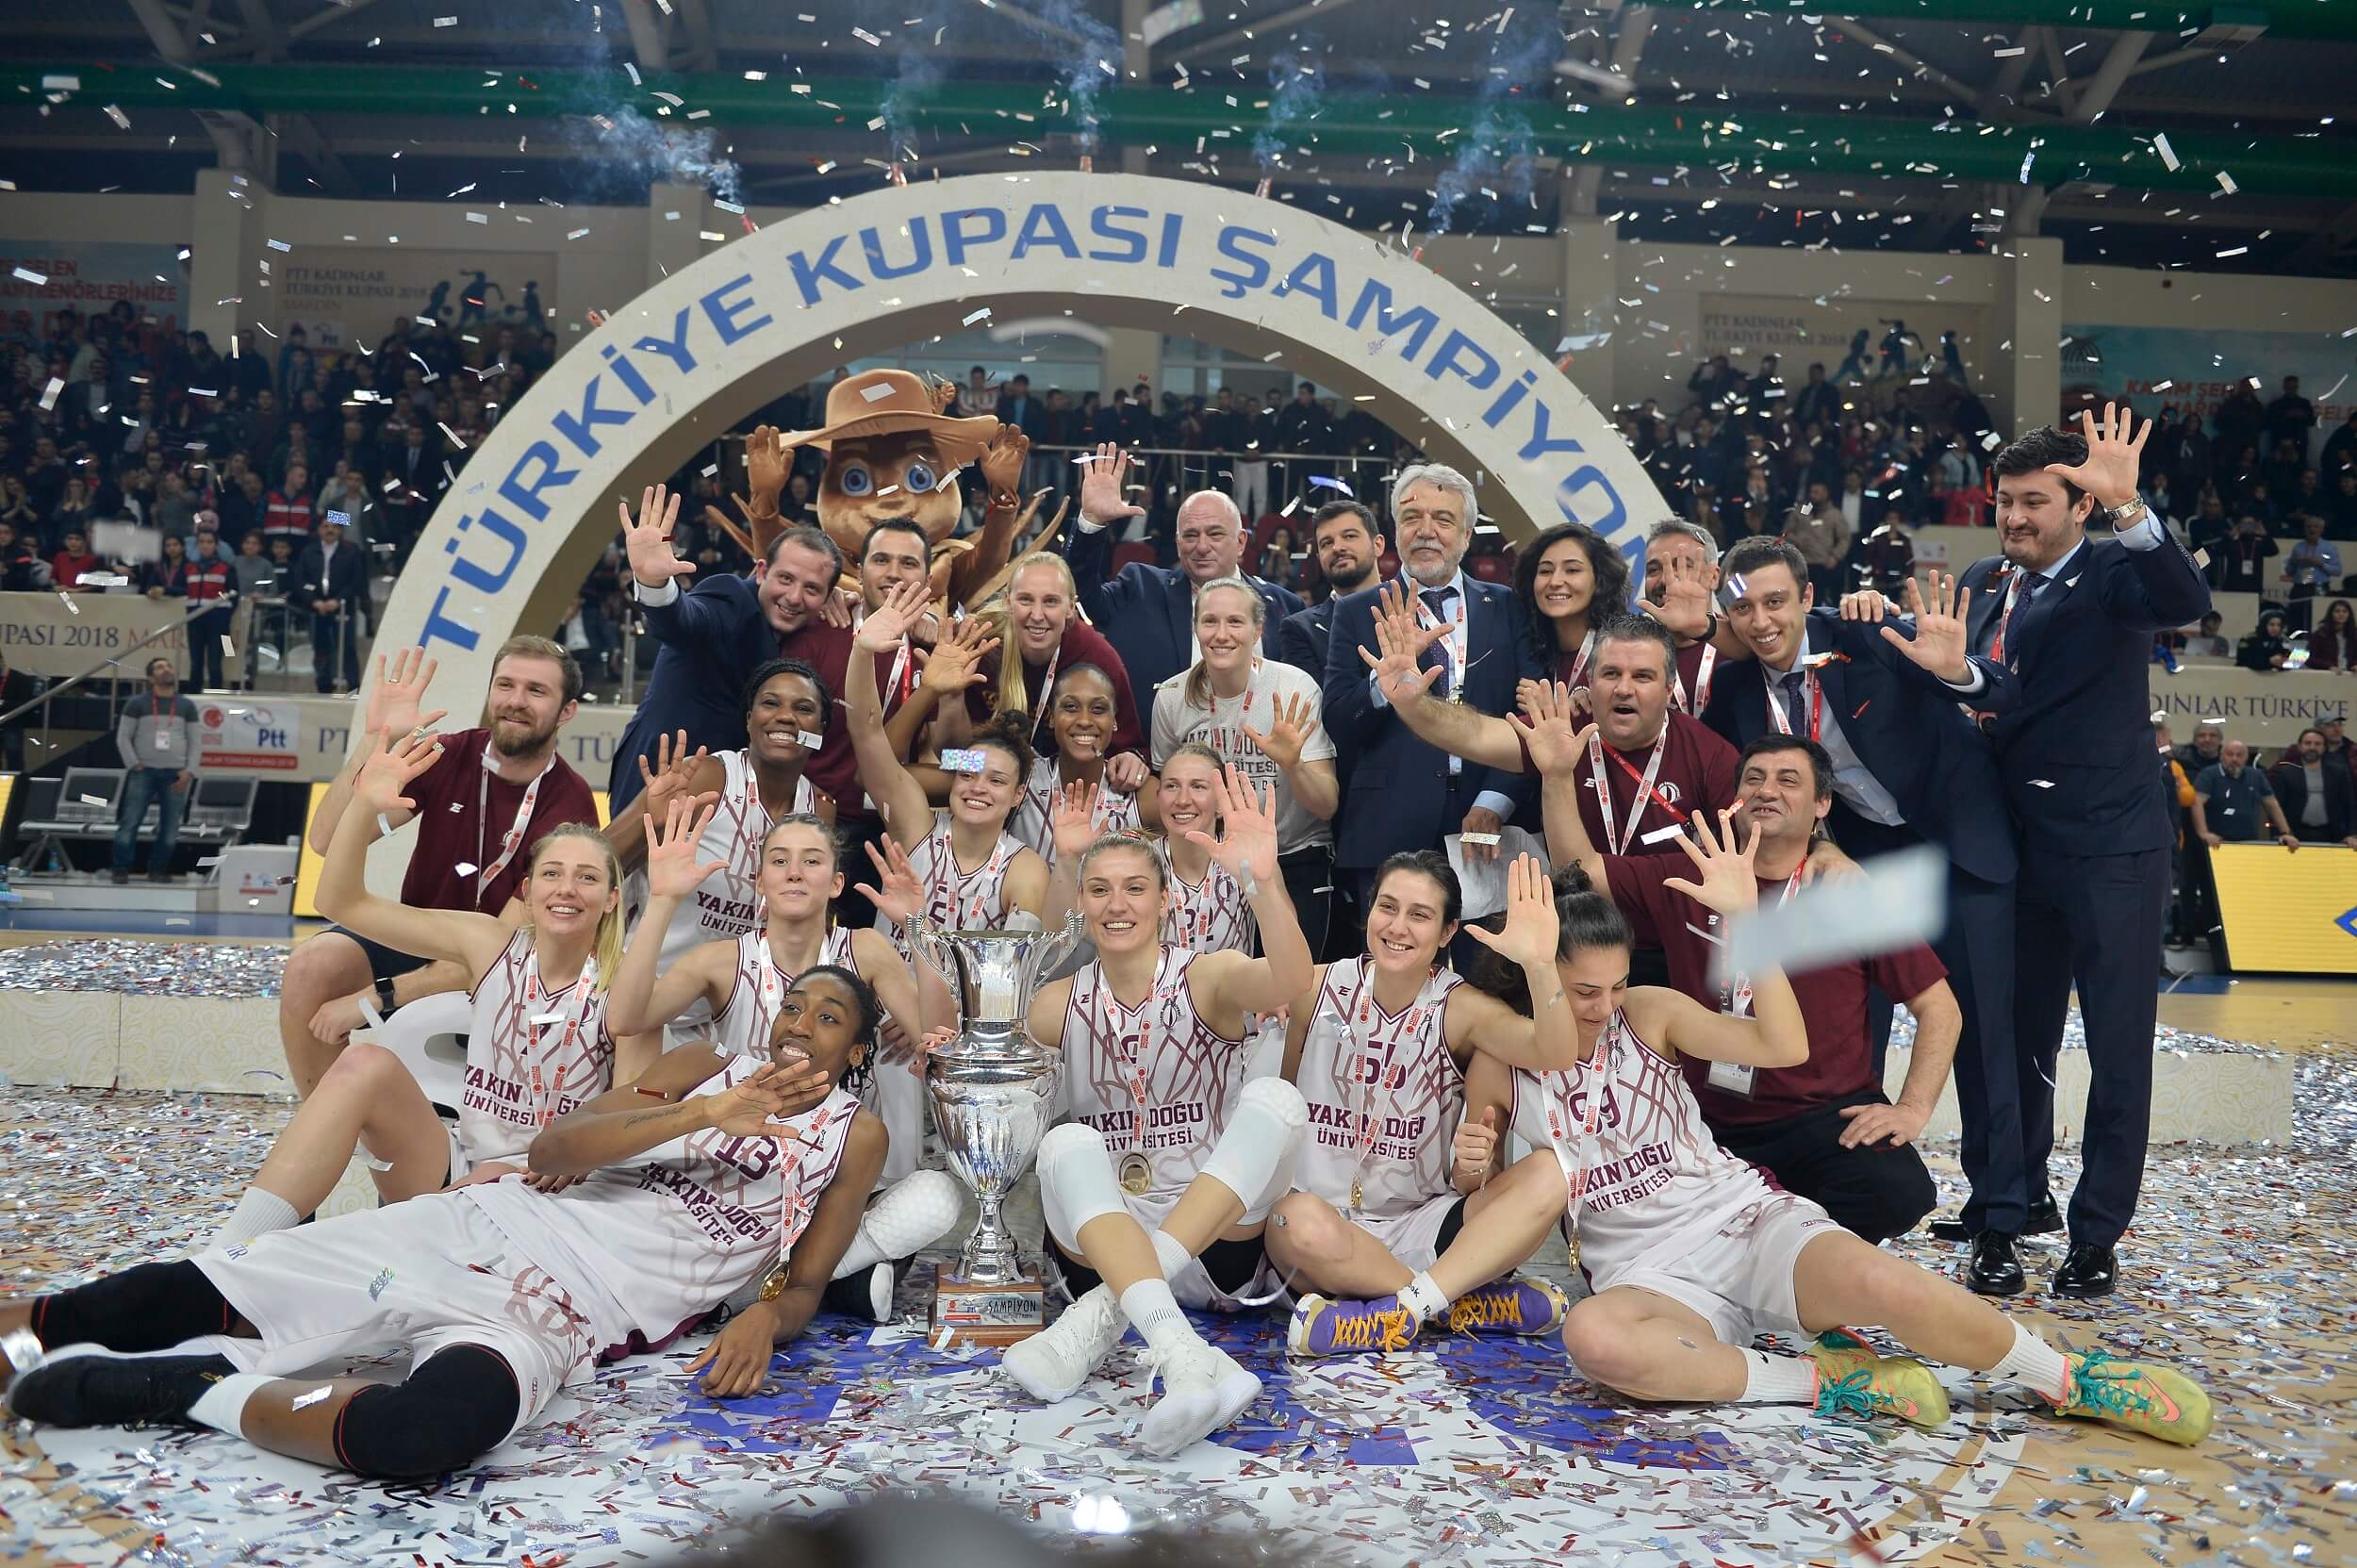 Zafer Kalaycıoğlu; “Final Four Hedefimizi Gerçekleştirdik, Gözümüz Şampiyonlukta”